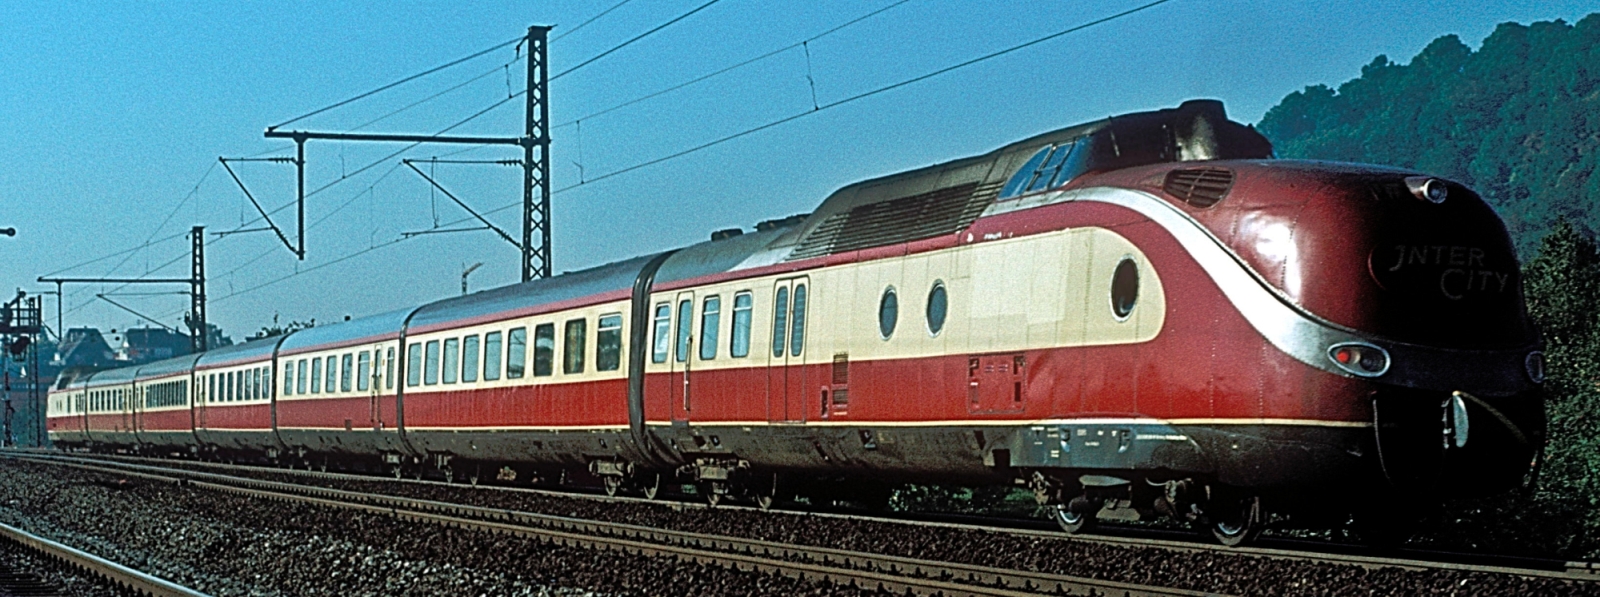 601 009 in September 1978 in Asperg